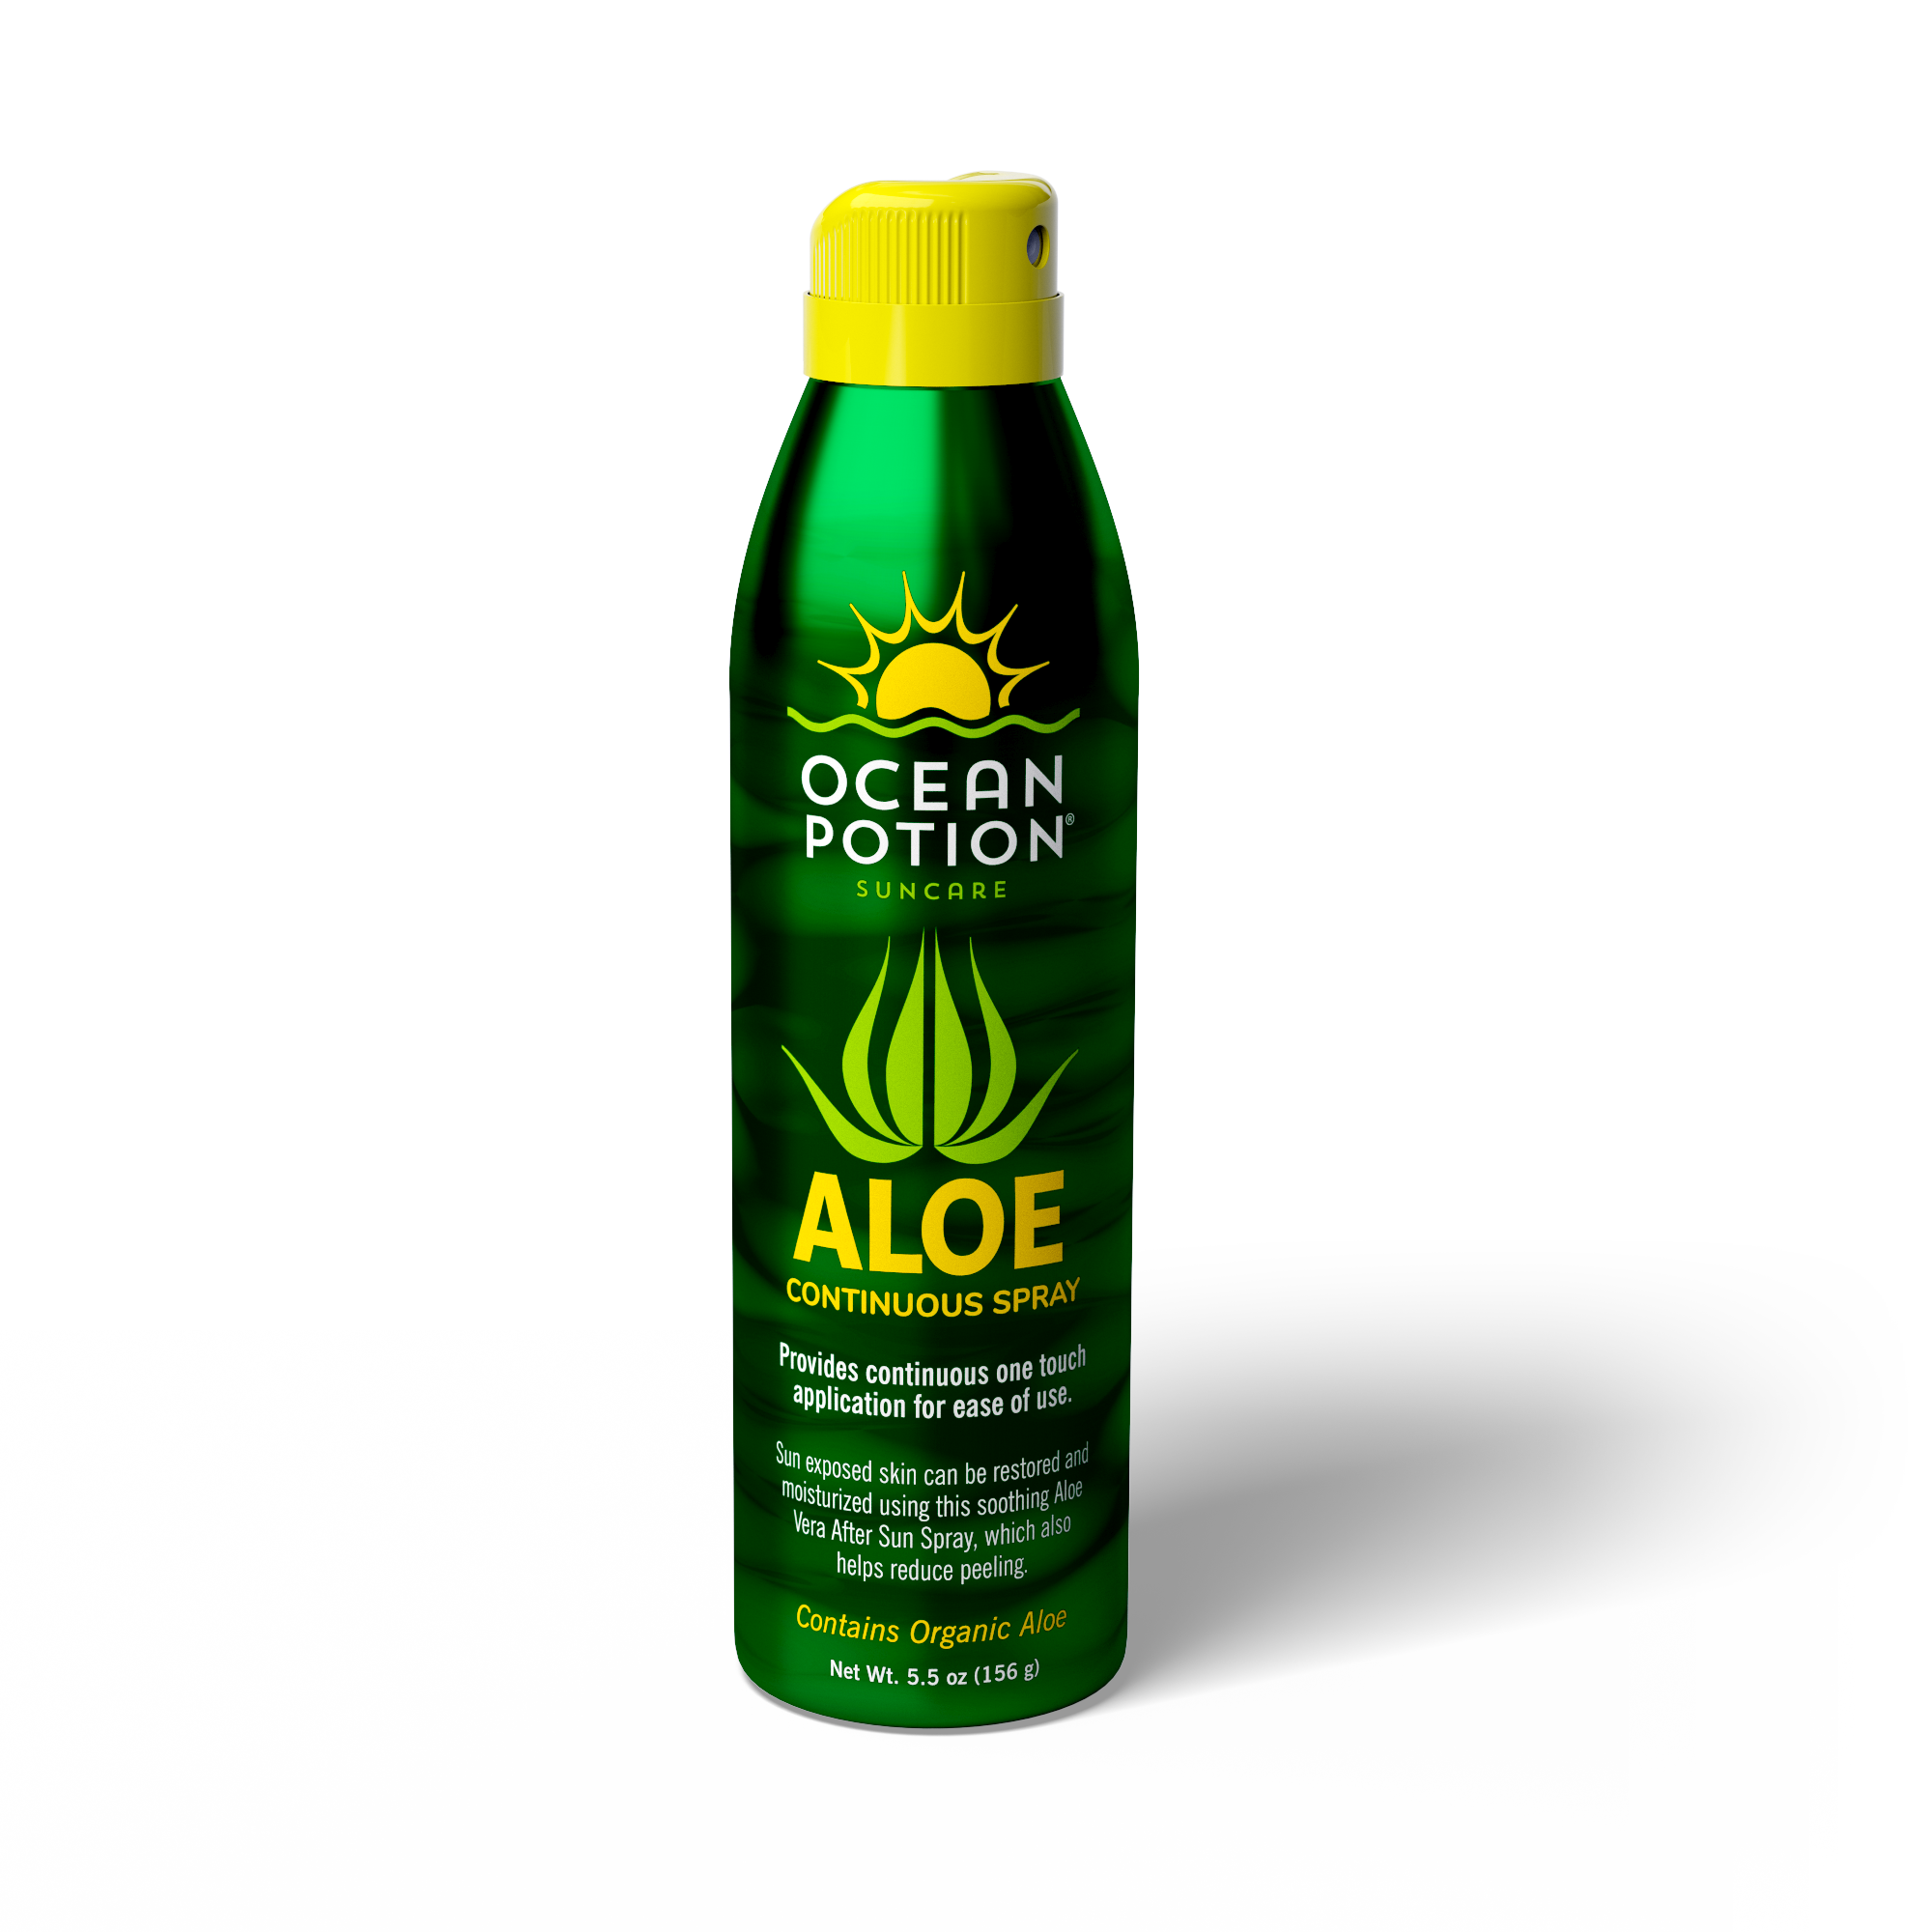 Aloe Vera Spray